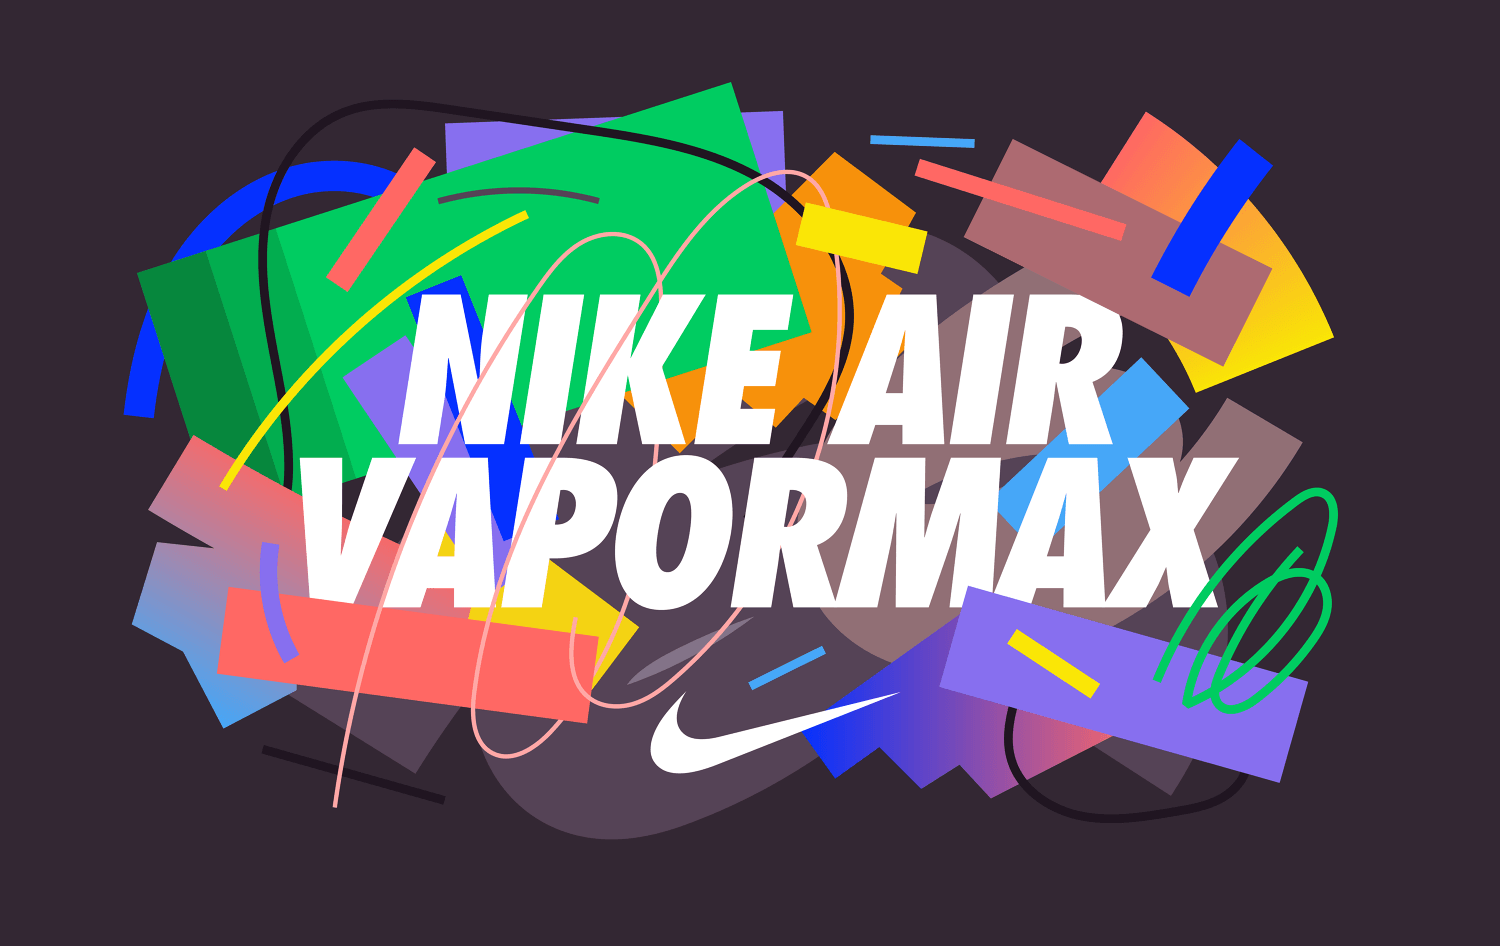 Niike Vapor Max Logo - Nike Air Vapormax - Skip Dolphin Hursh